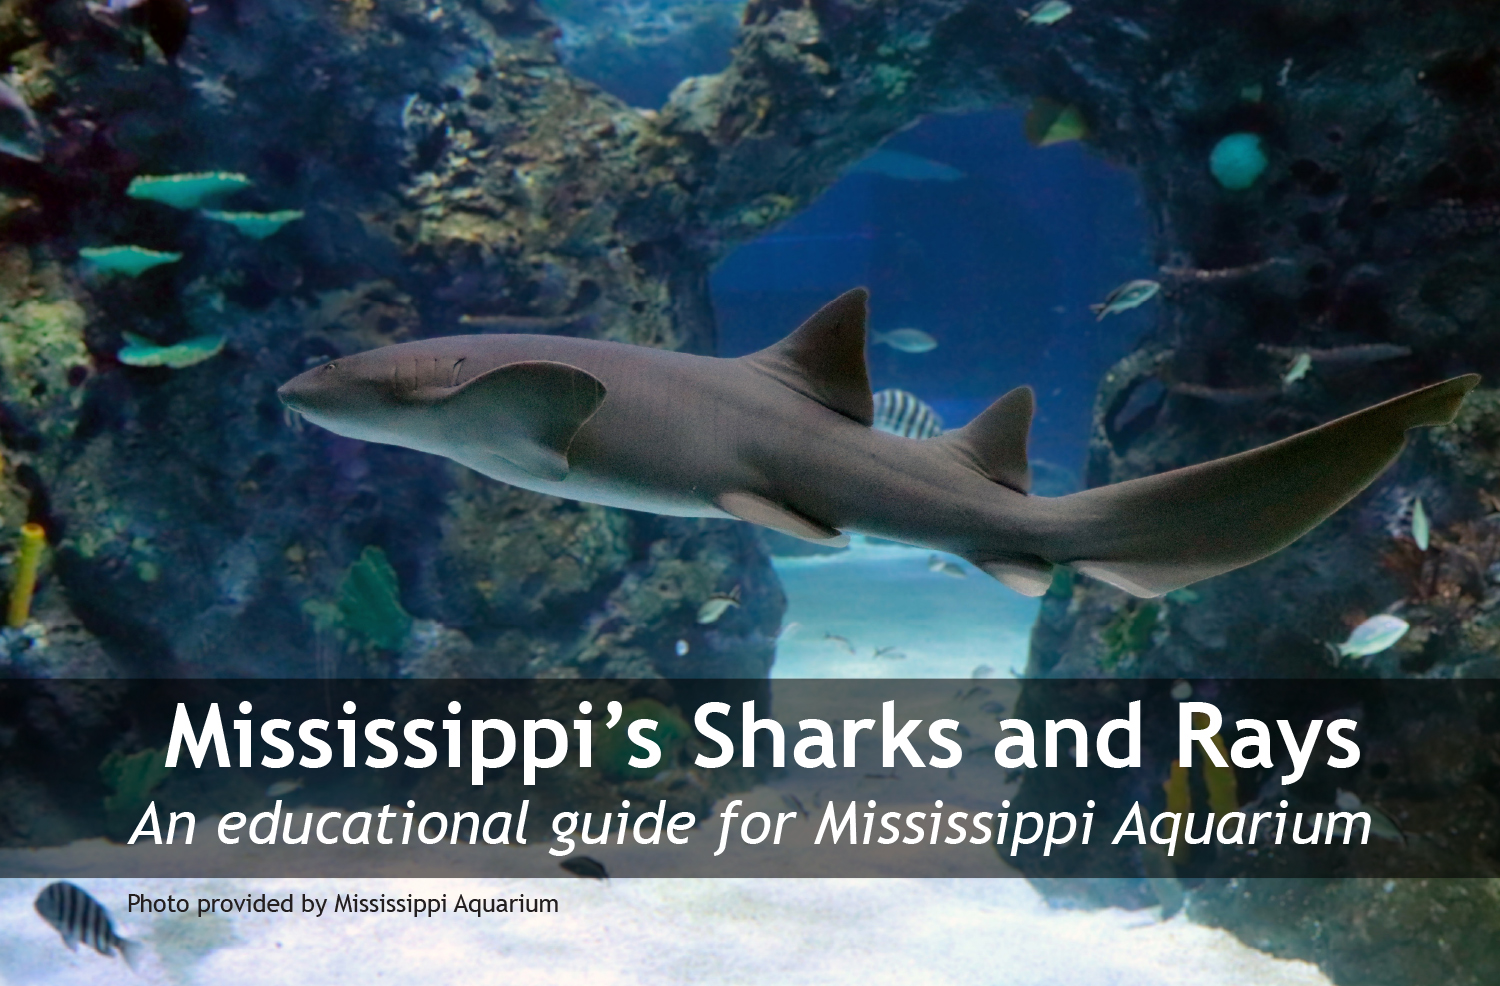 Cover image of shark swimming in Mississippi Aquarium.